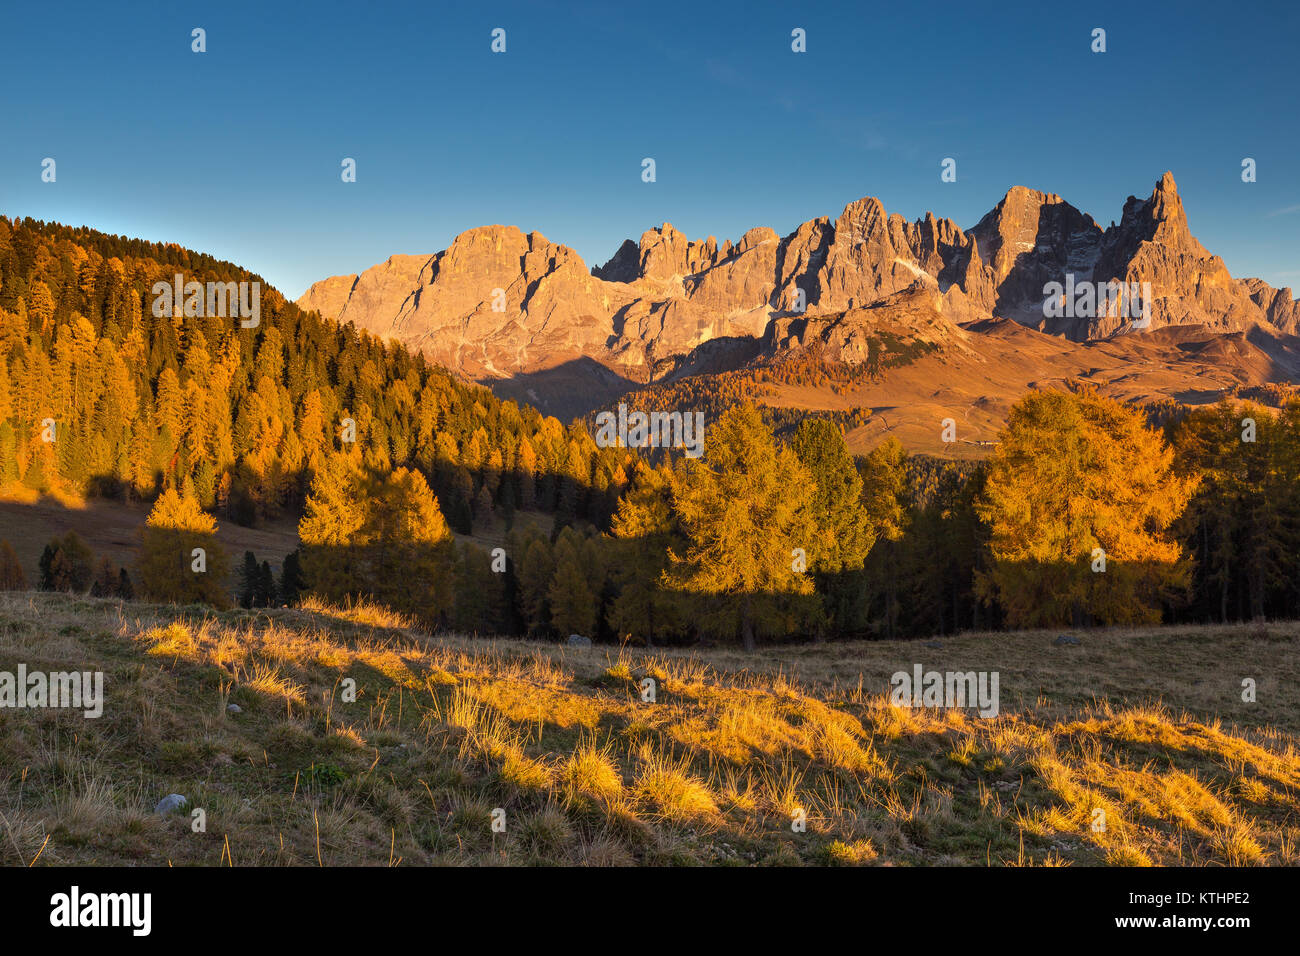 The Panveggio Pale di San Martino Natural Park. View from Malga Bocche. The Dolomites of Trentino. Sunlight in autumn season. Italian Alps. Europe. Stock Photo